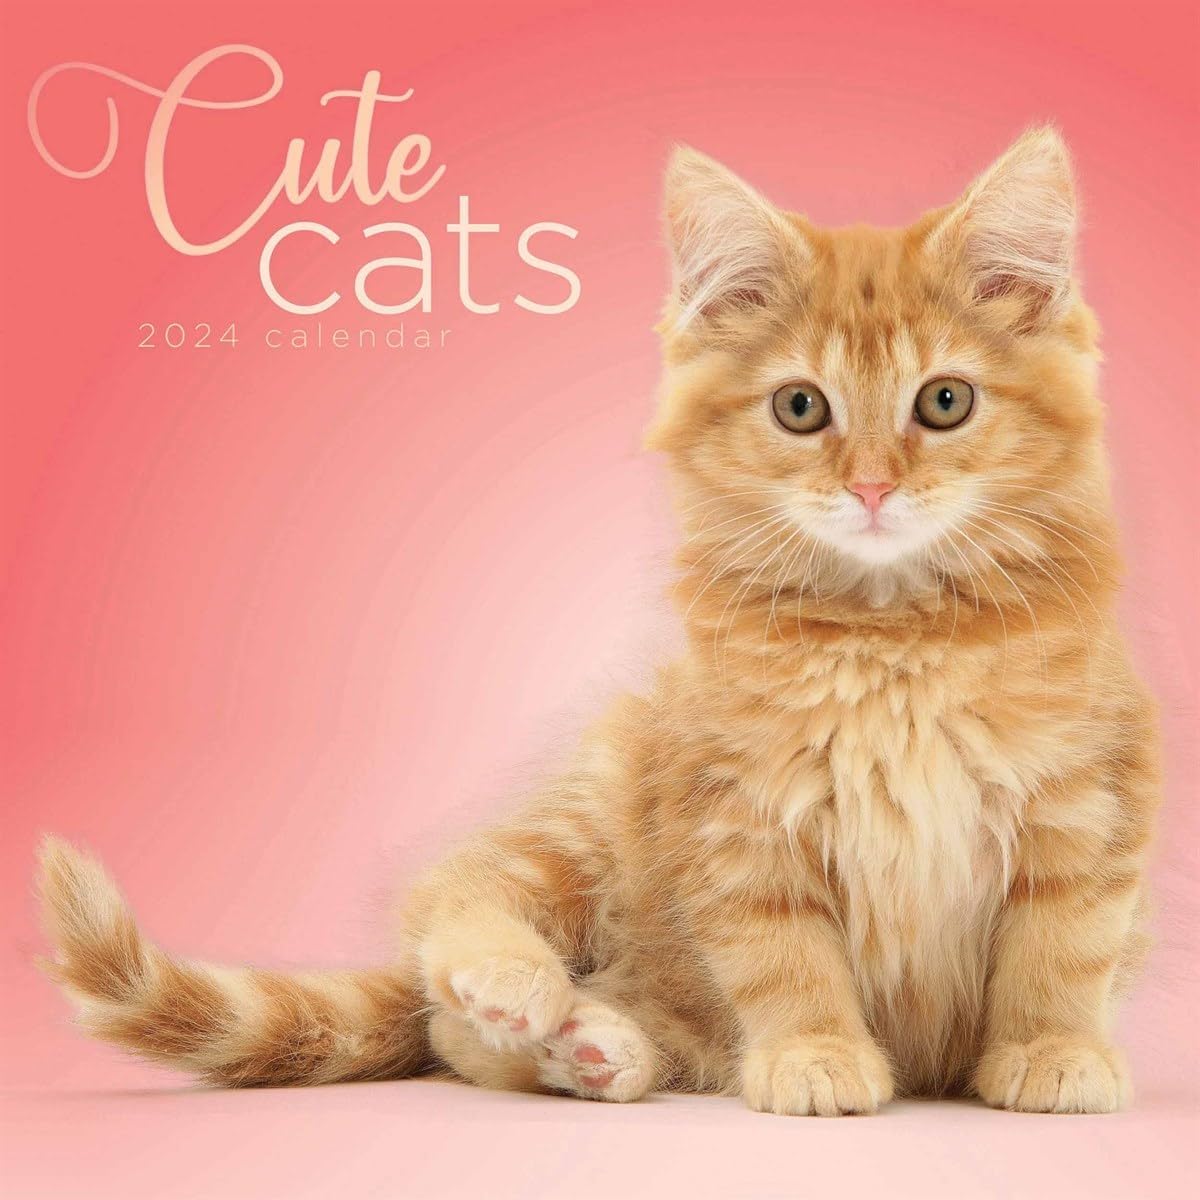 Calendar 2024 - Cute Cats | Carousel